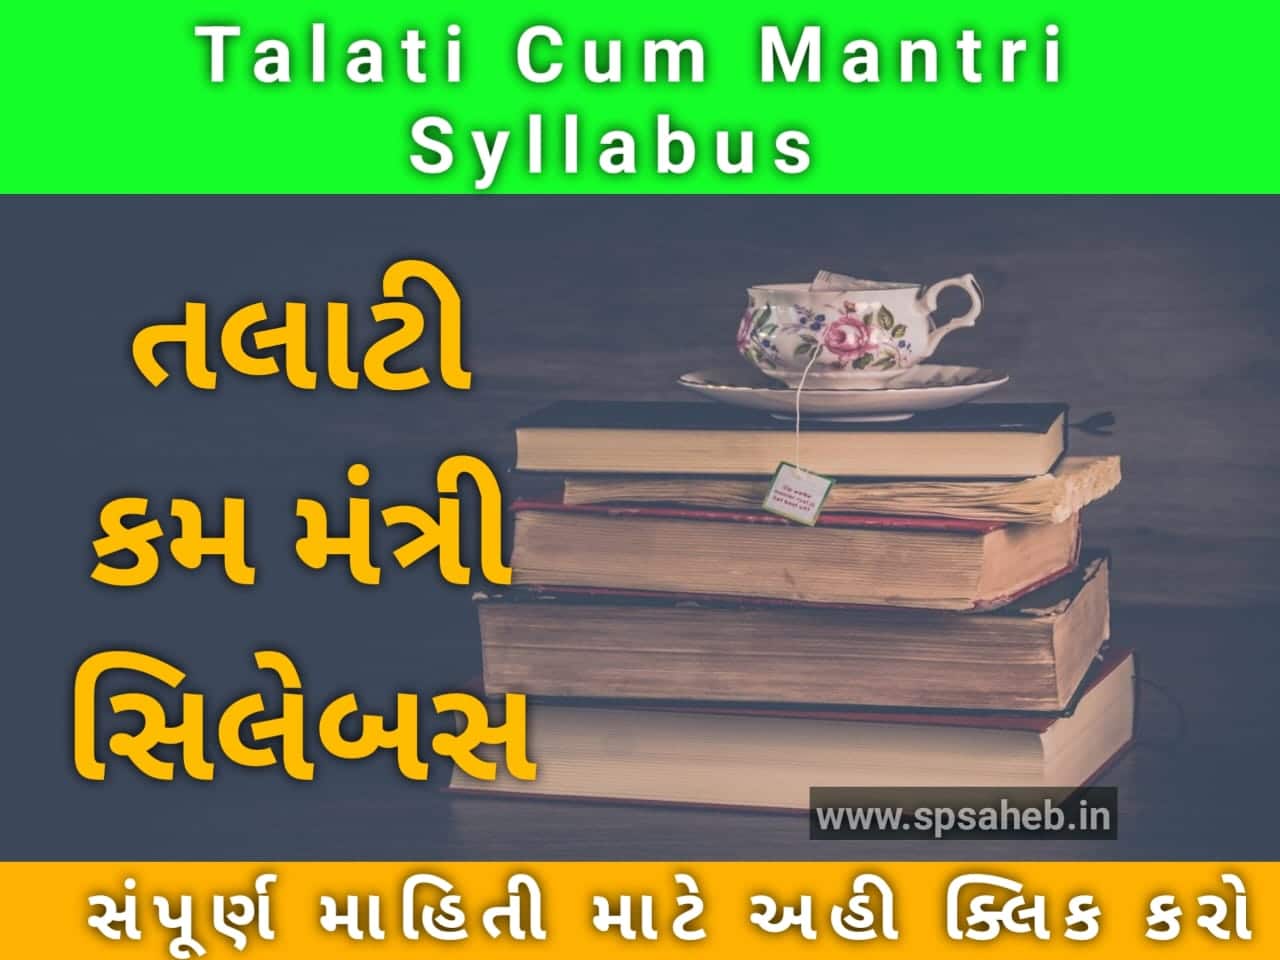 તલાટી કમ મંત્રી syllabus | Talati cum mantri Syllabus PDF